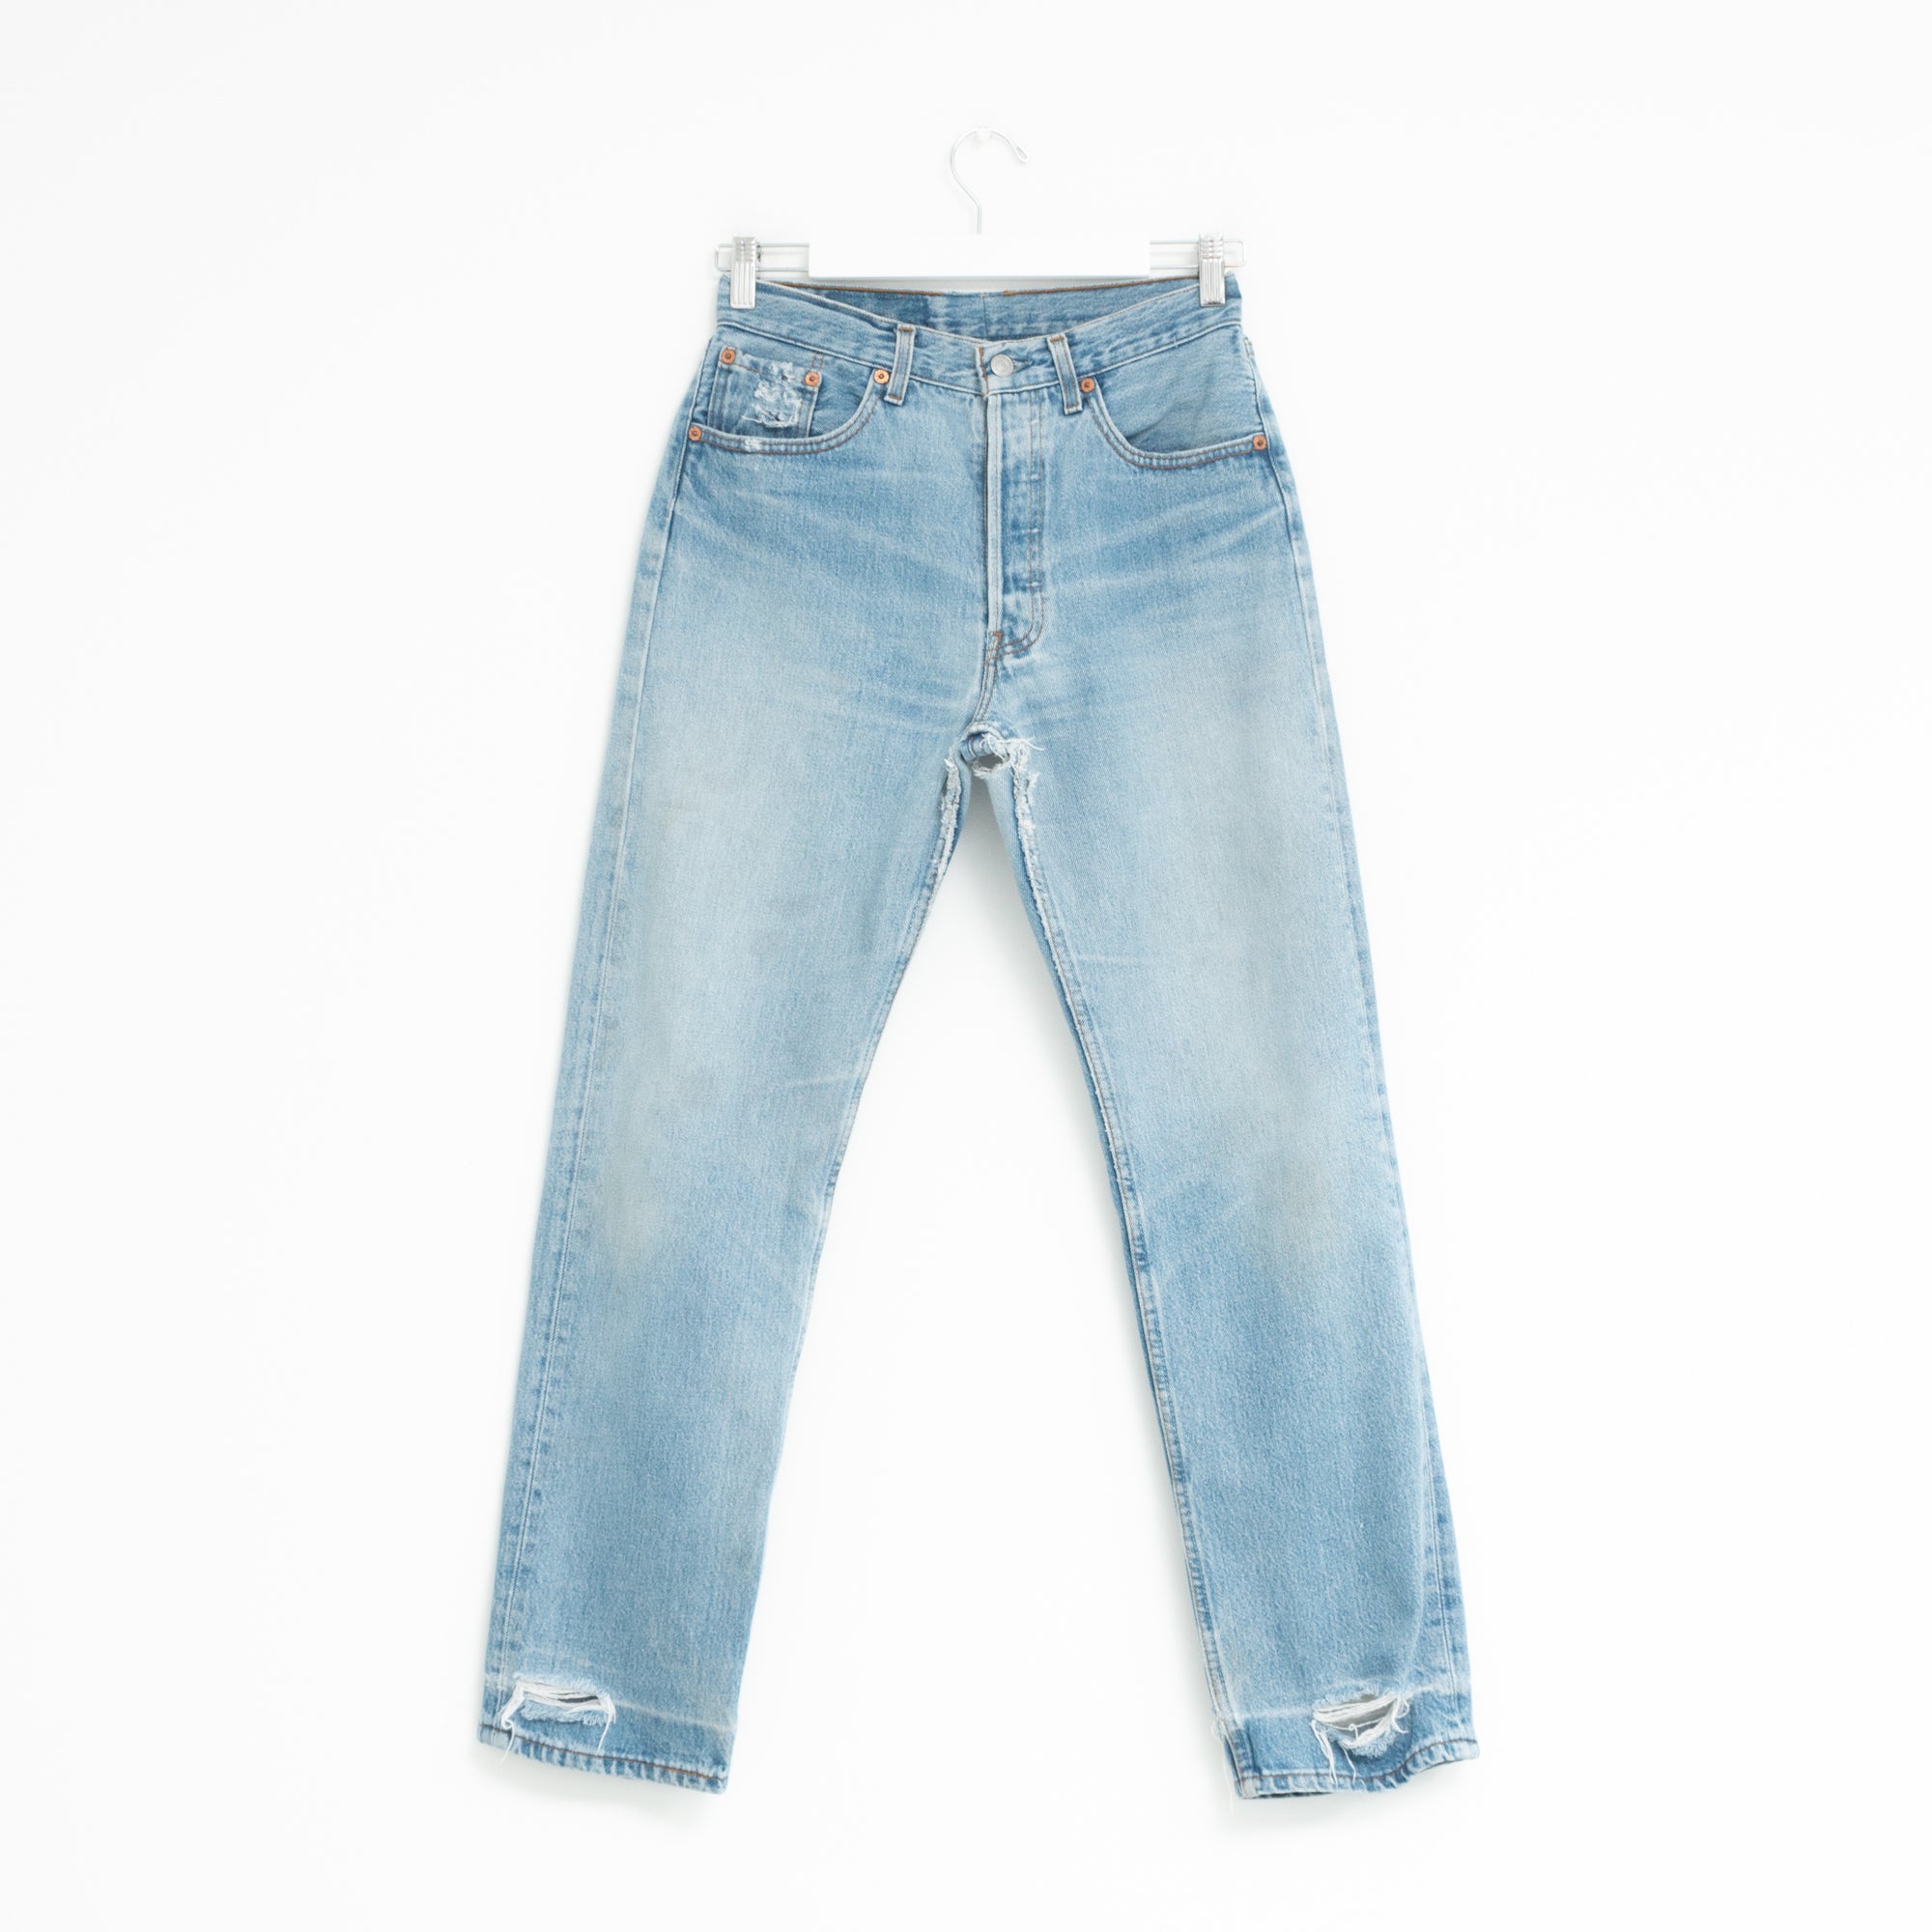 "DISTRESSED" Jeans W28 L31